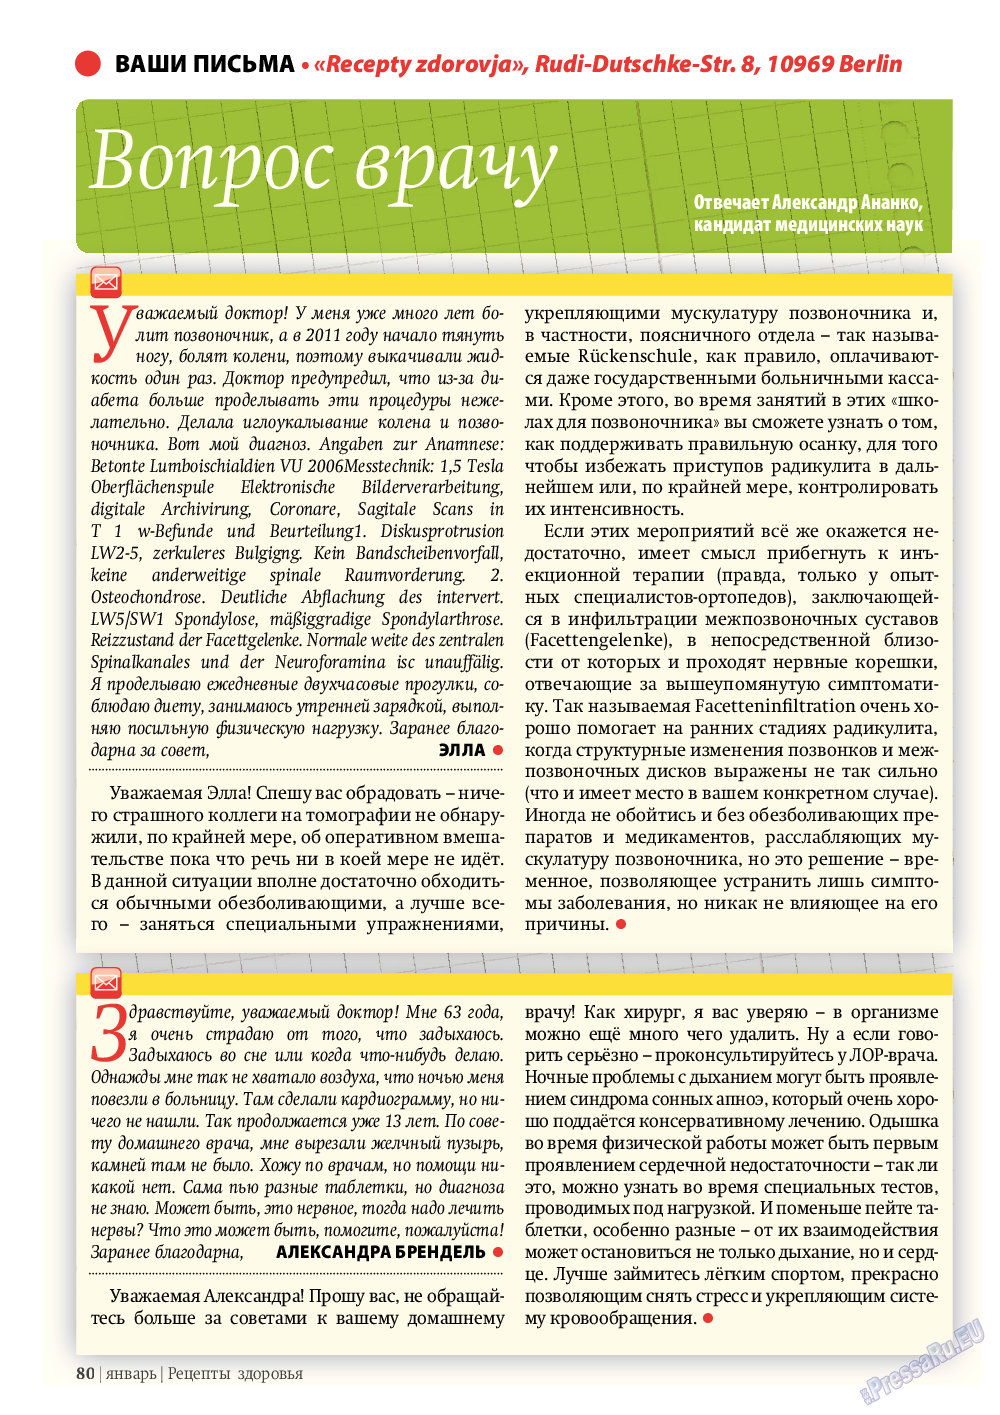 Рецепты здоровья, журнал. 2012 №1 стр.80